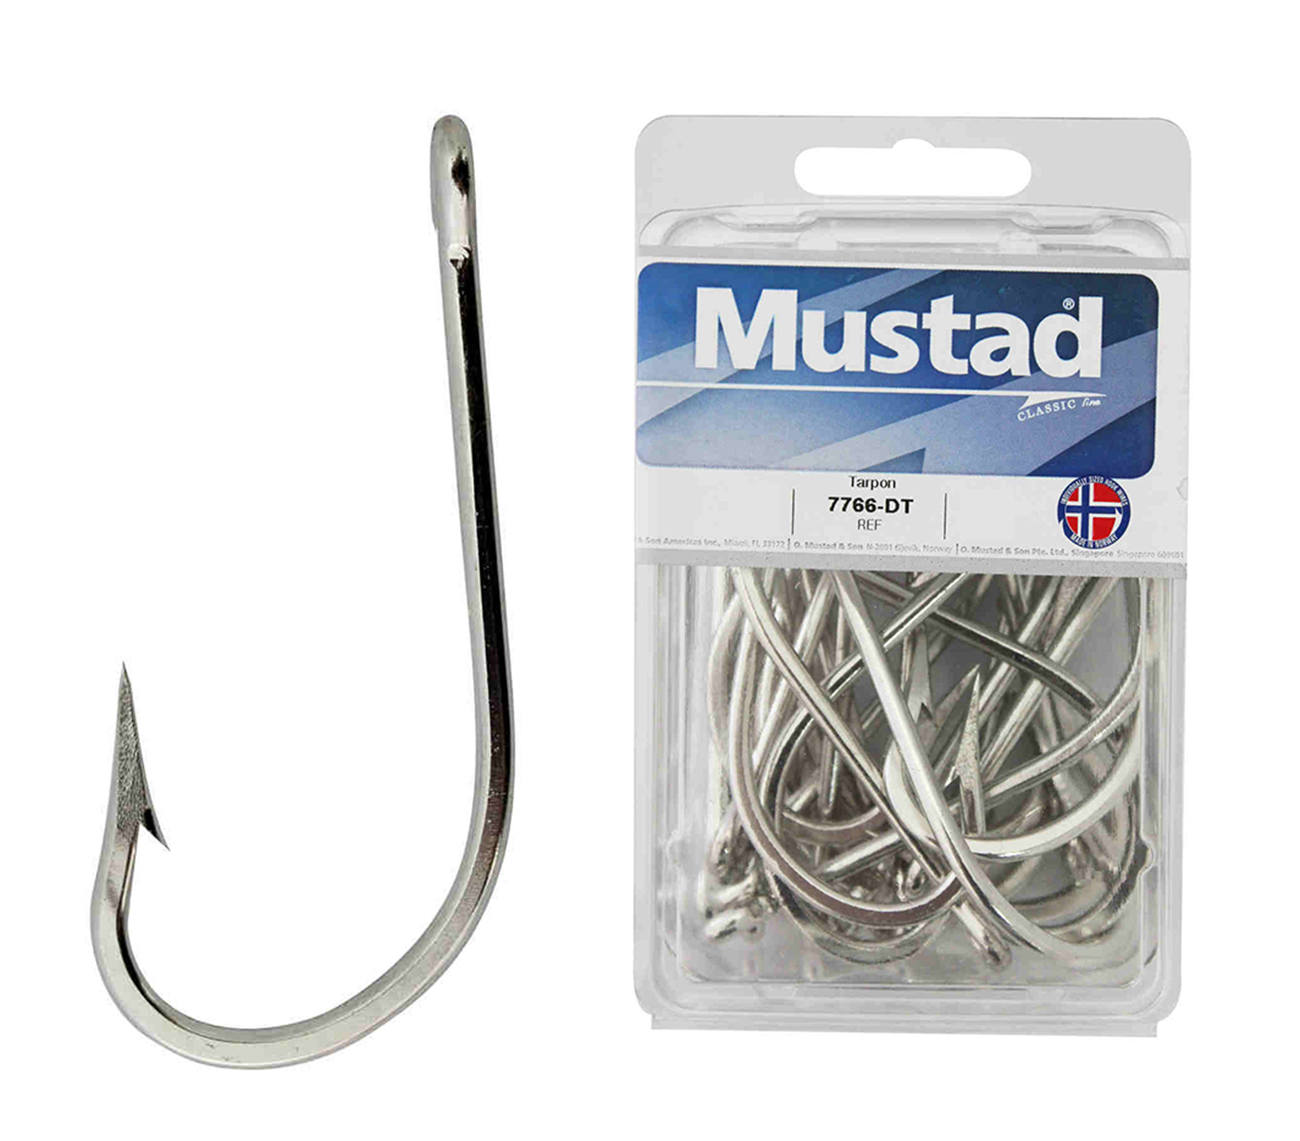 Mustad 92247 Baitholder Hooks (Size: 4/0, Pack: 25) Mustad 92247